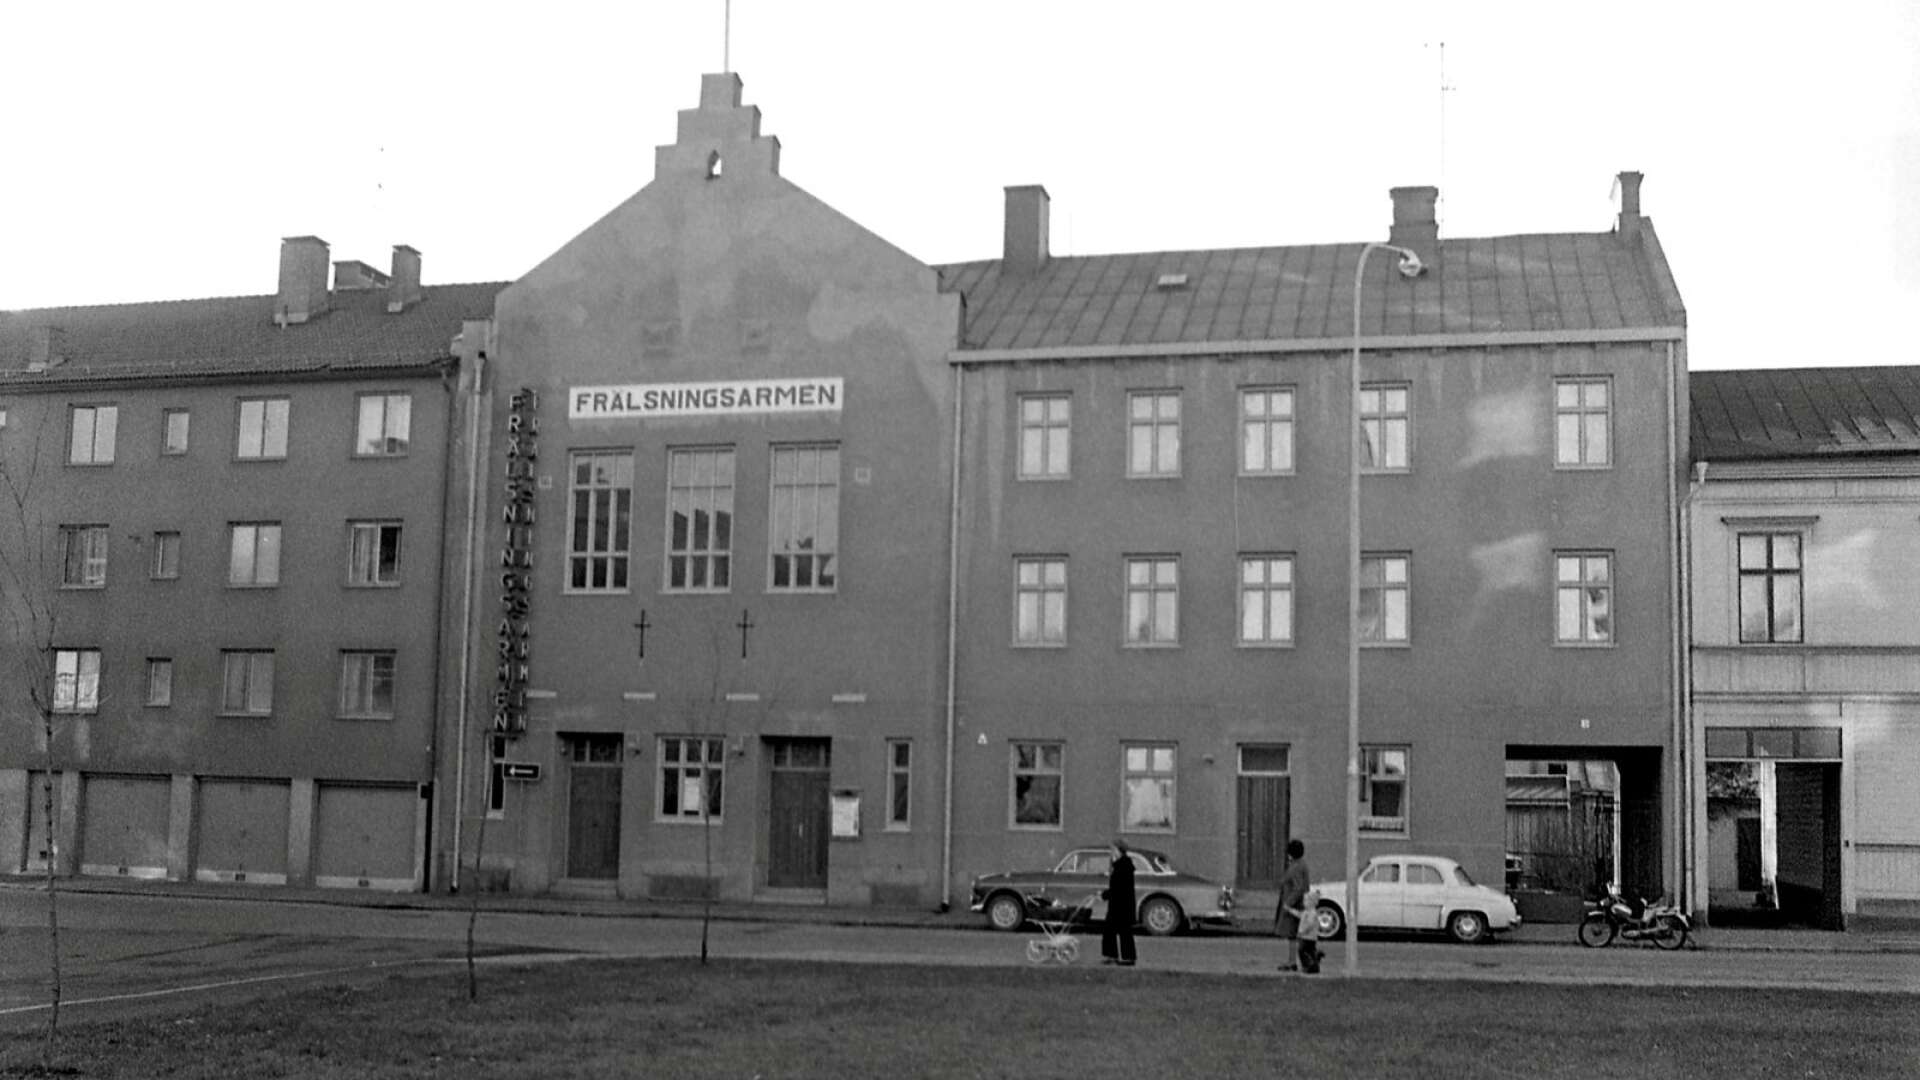 Frälsningsarmens hus i Haga fotat 1972. Hit flyttade rörelsen från Viken 1911 och huserade här i närmare 100 år.